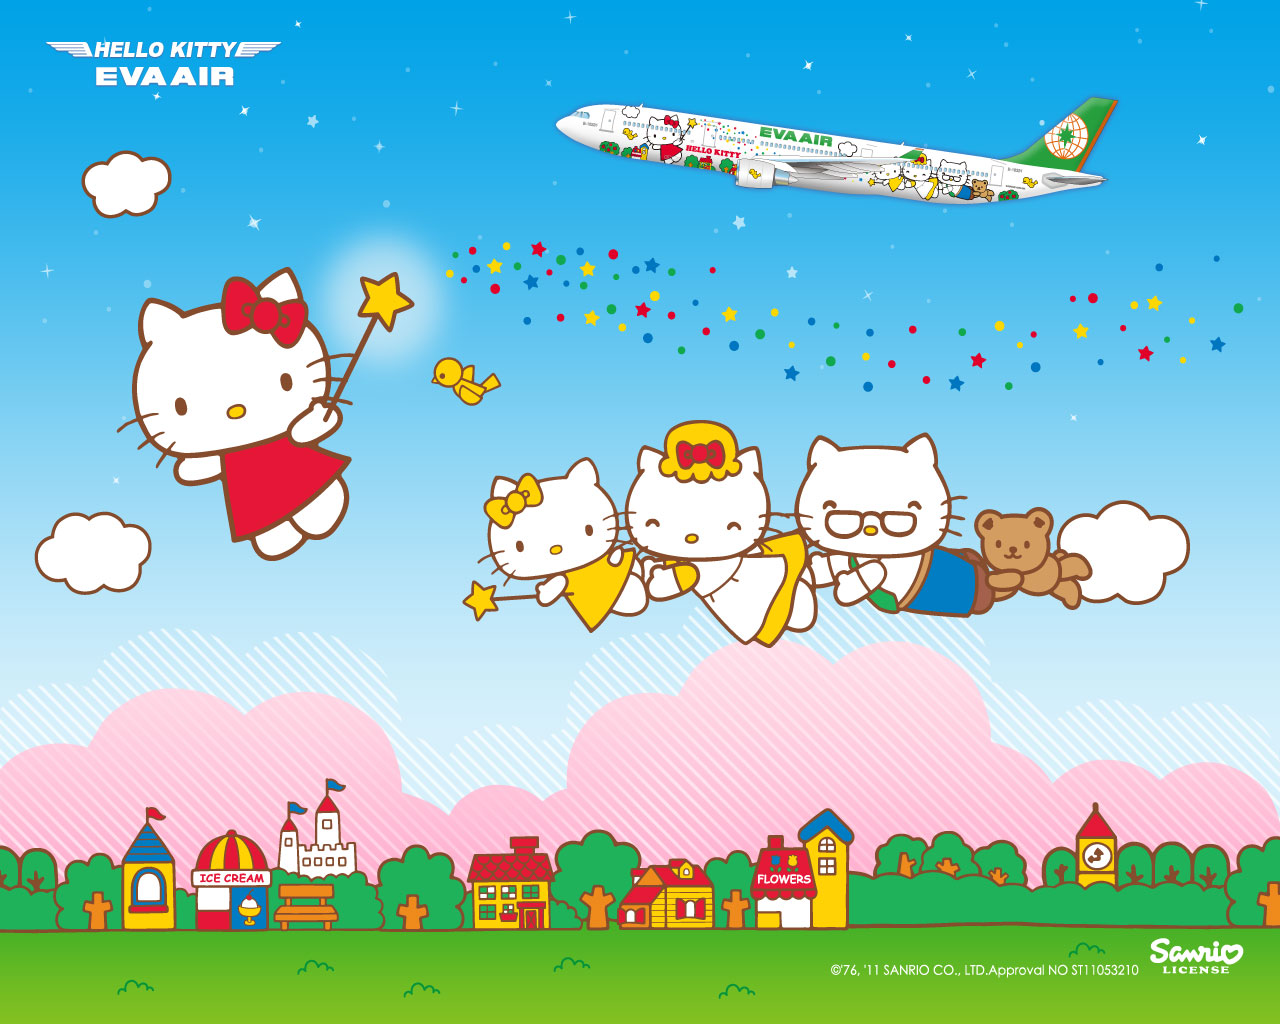 Hello Kitty Eva Airways 2012 Calendars!  hello kitty stuff